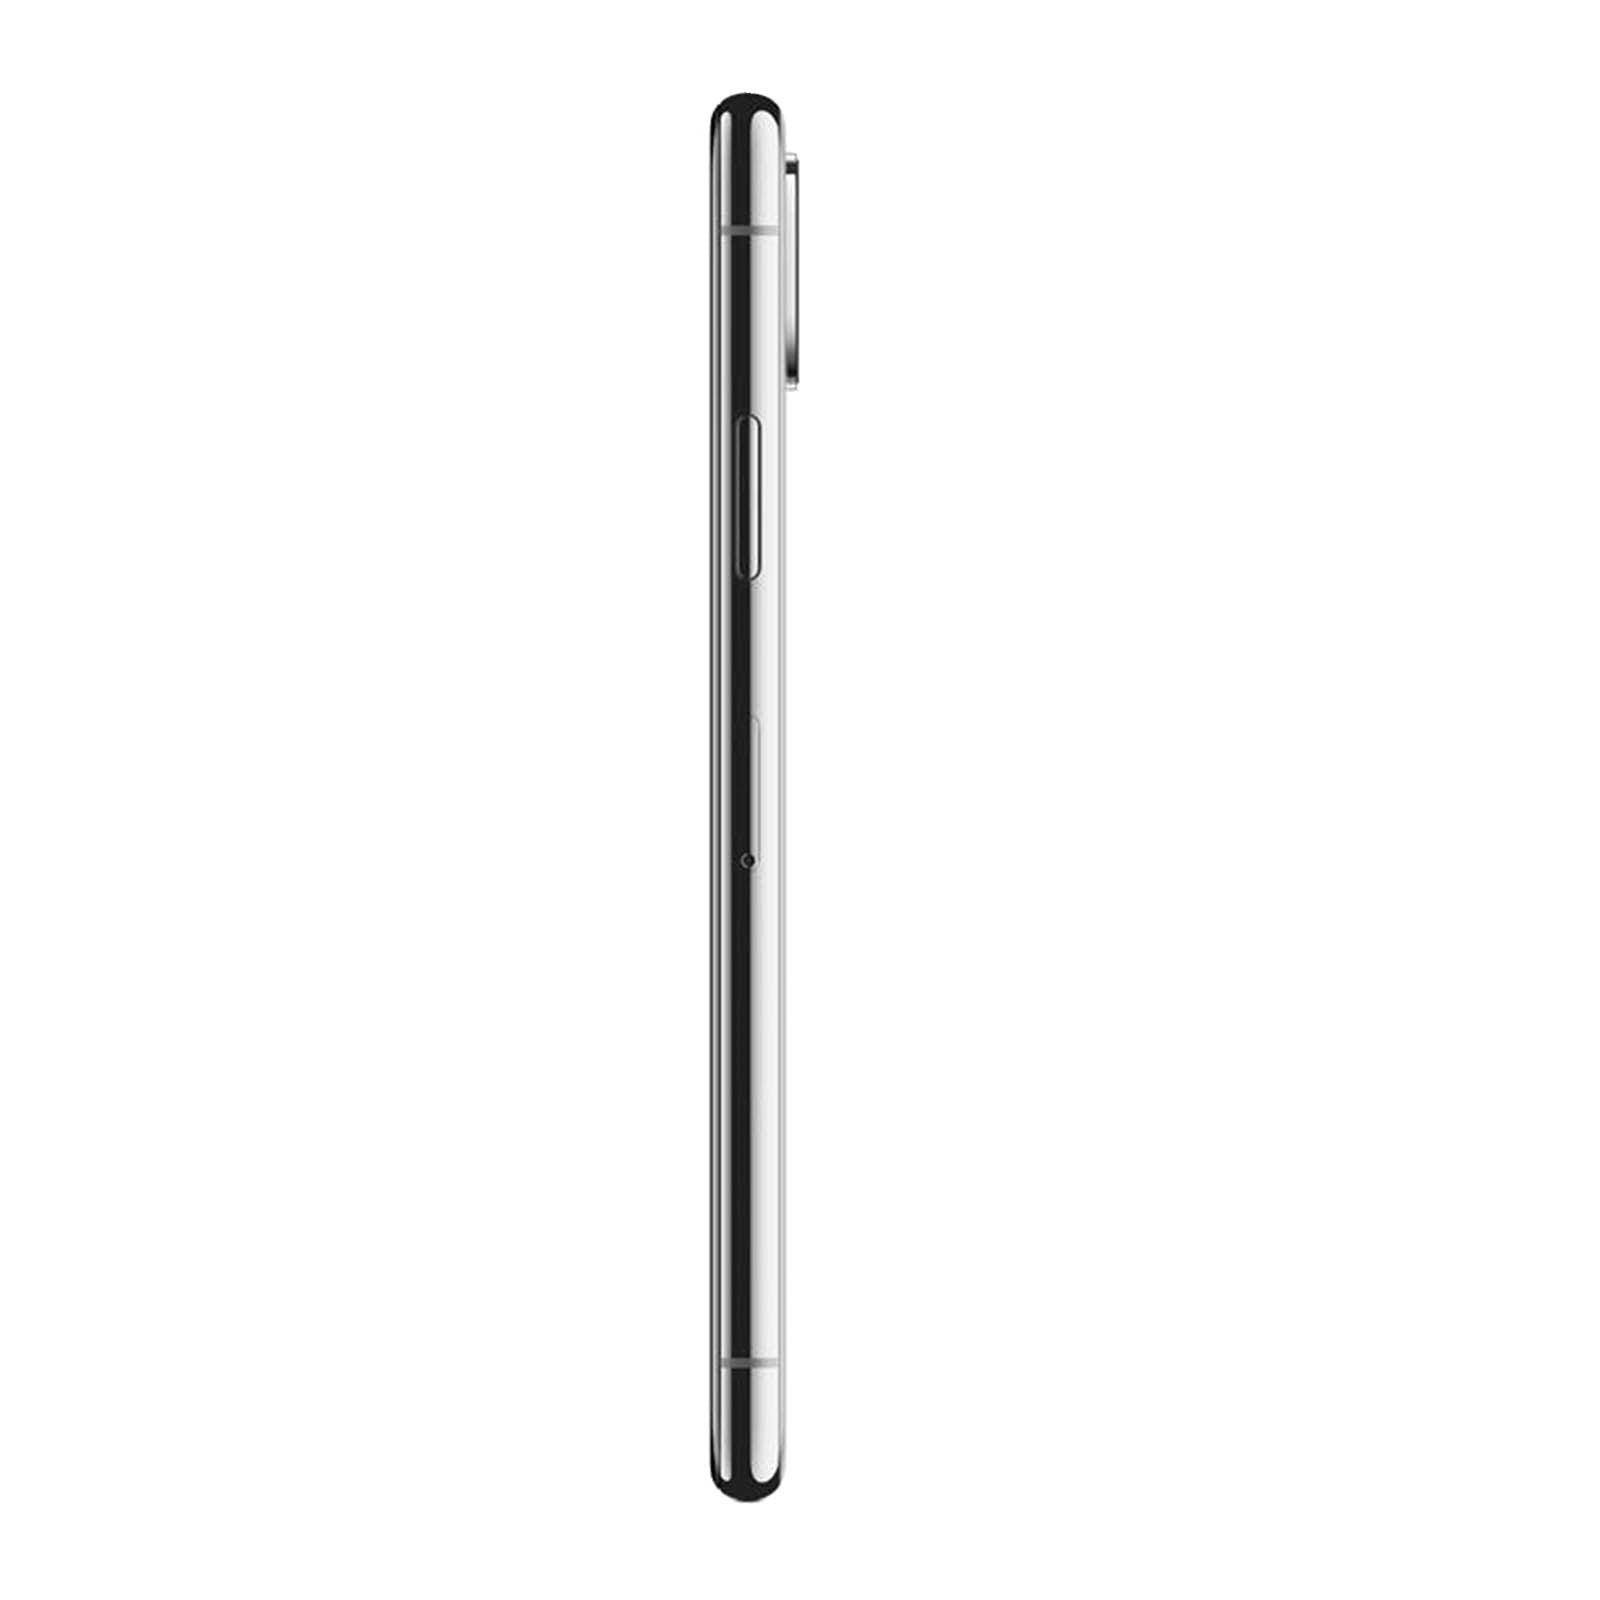 Apple iPhone XS 512GB Silver Pristine - T-Mobile